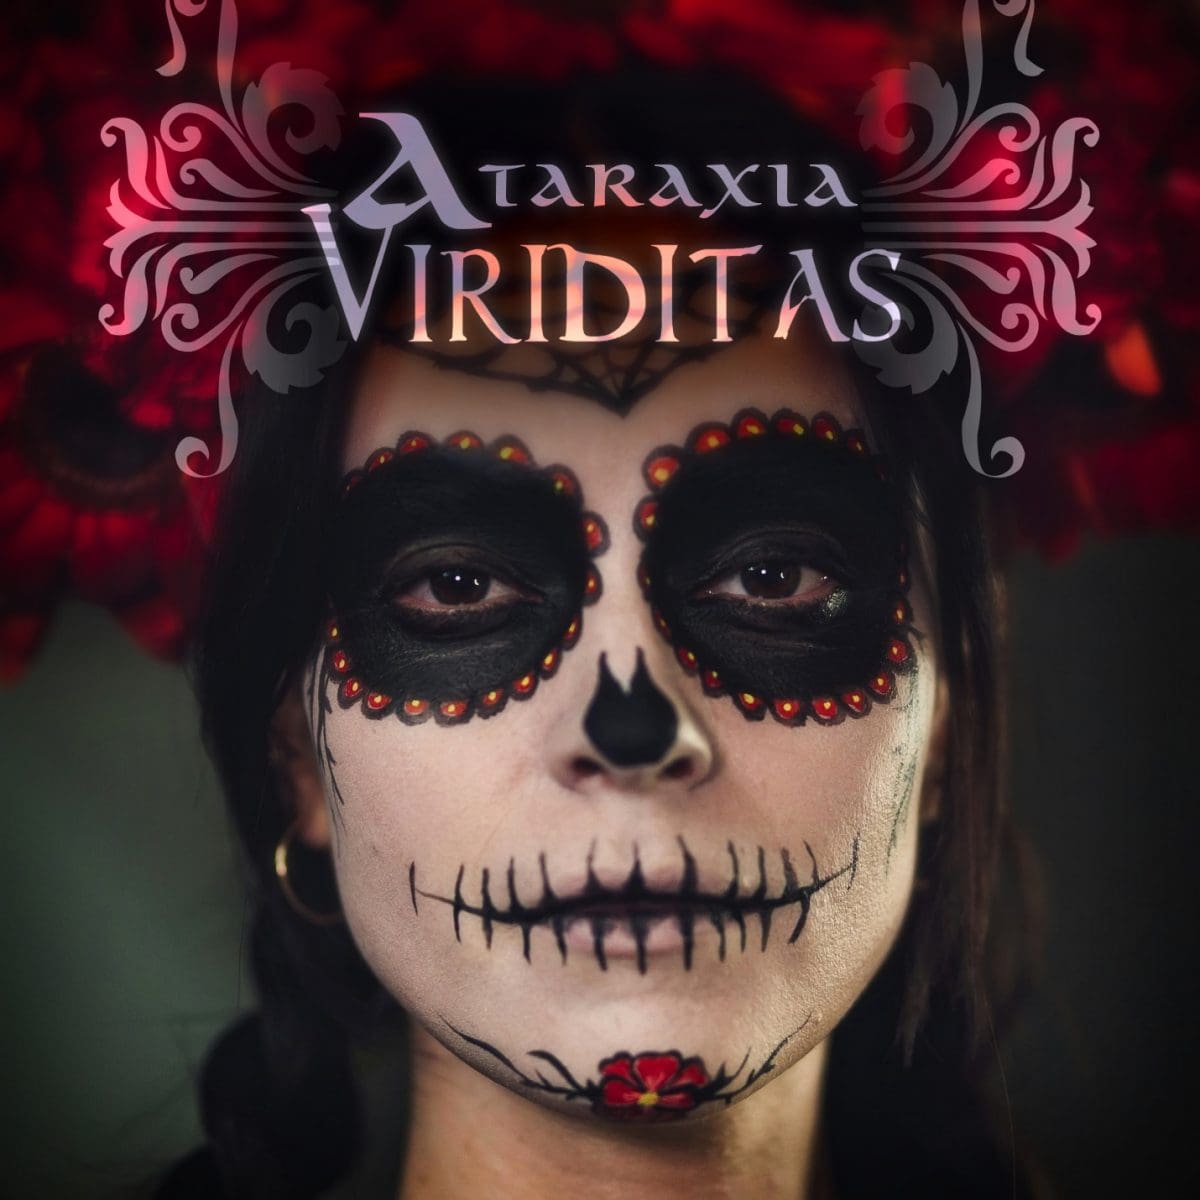 Ataraxia presenta "Viriditas", nueva canción y videoclip, inspirada en la cultura mexicana del "Día de Muertos"